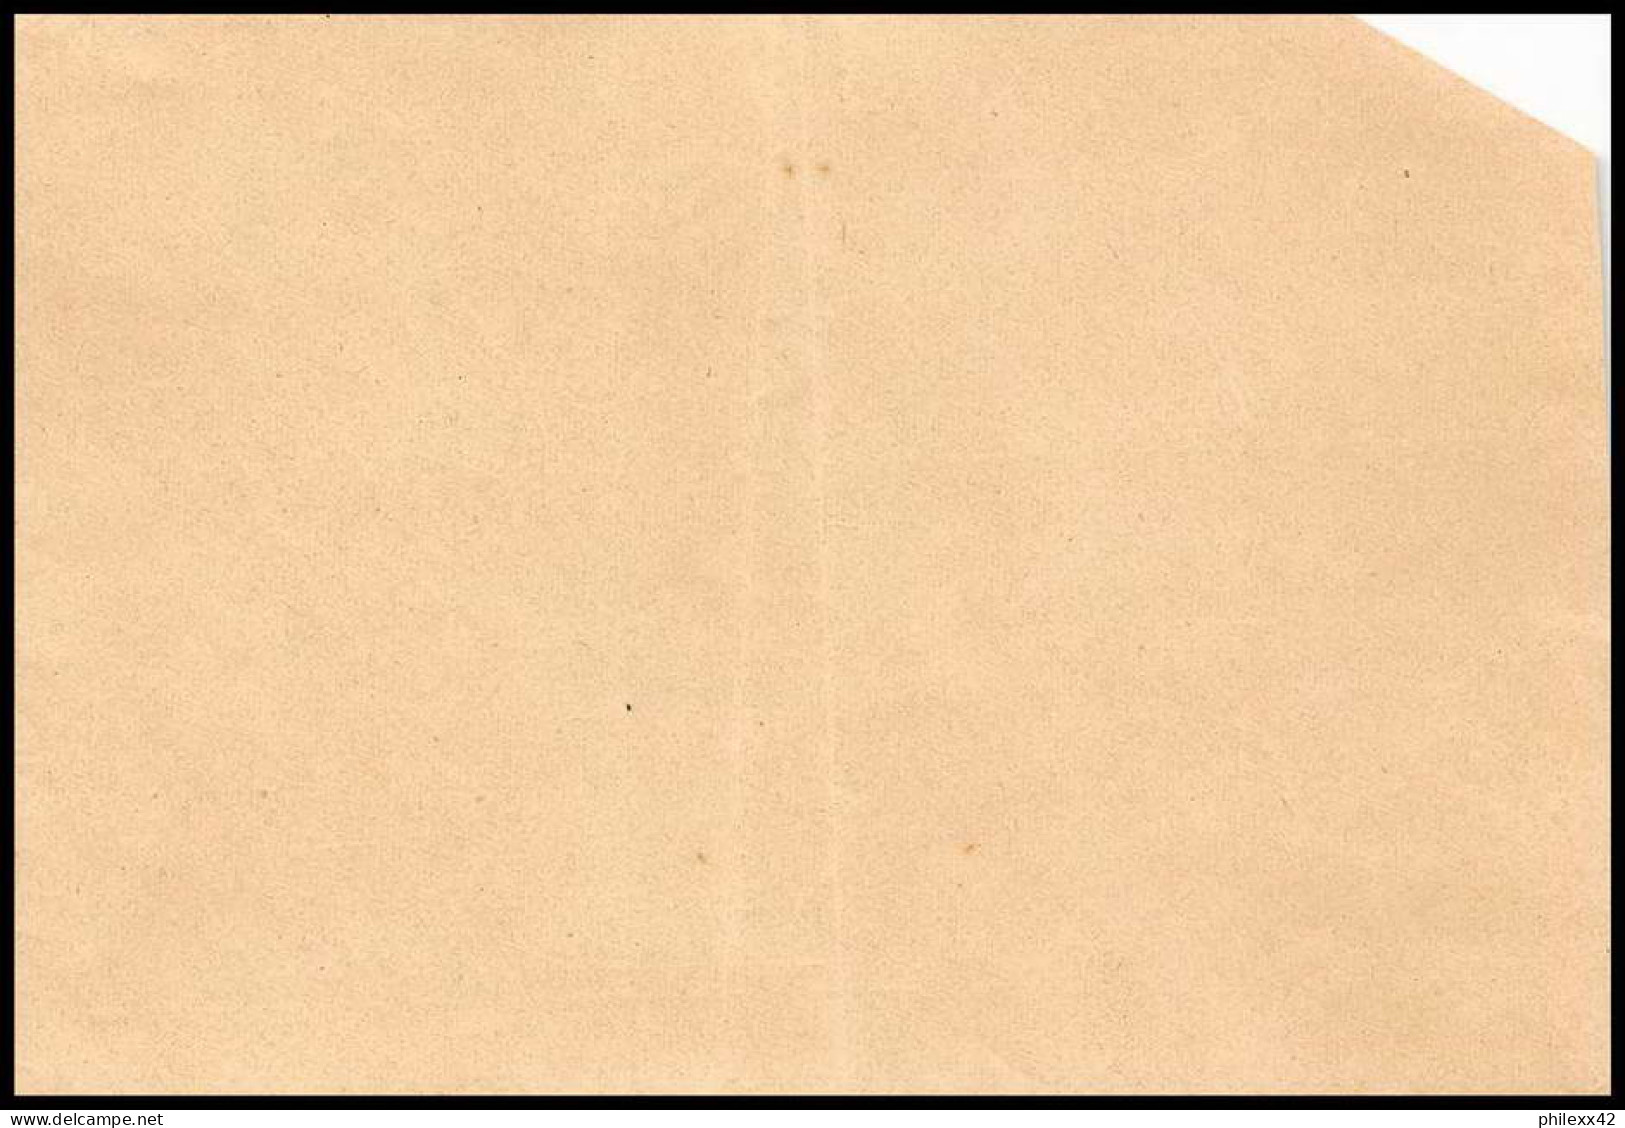 collection N°15 marcophilie militaire lot de 52 lettres covers guerre 1914 départ - de 2 euros pièce